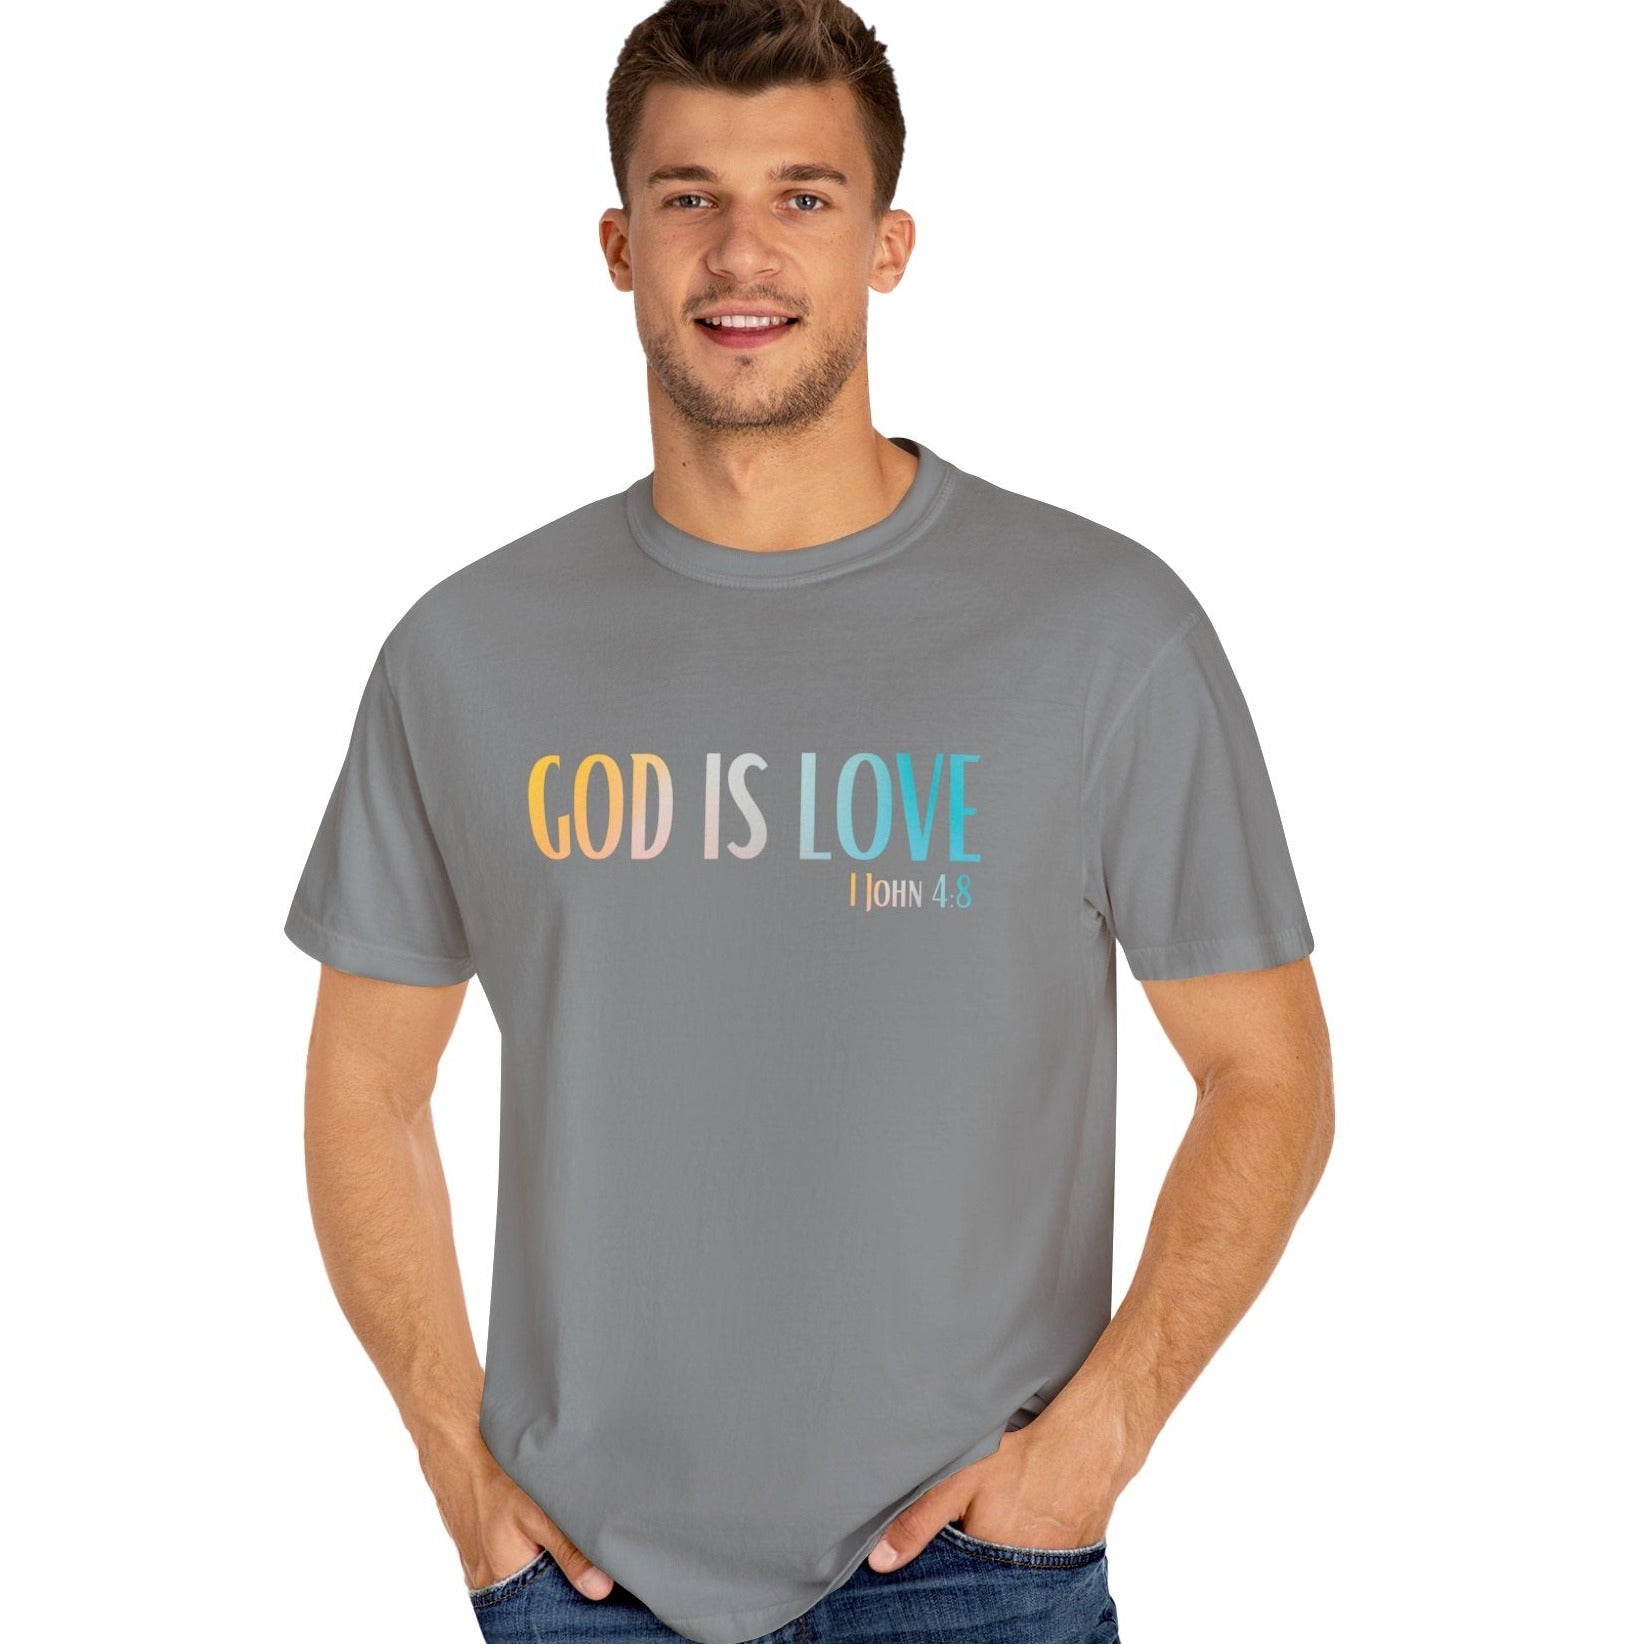 1 John 4:8 God is Love, Christian Garment-Dyed T-shirt for men and women concrete